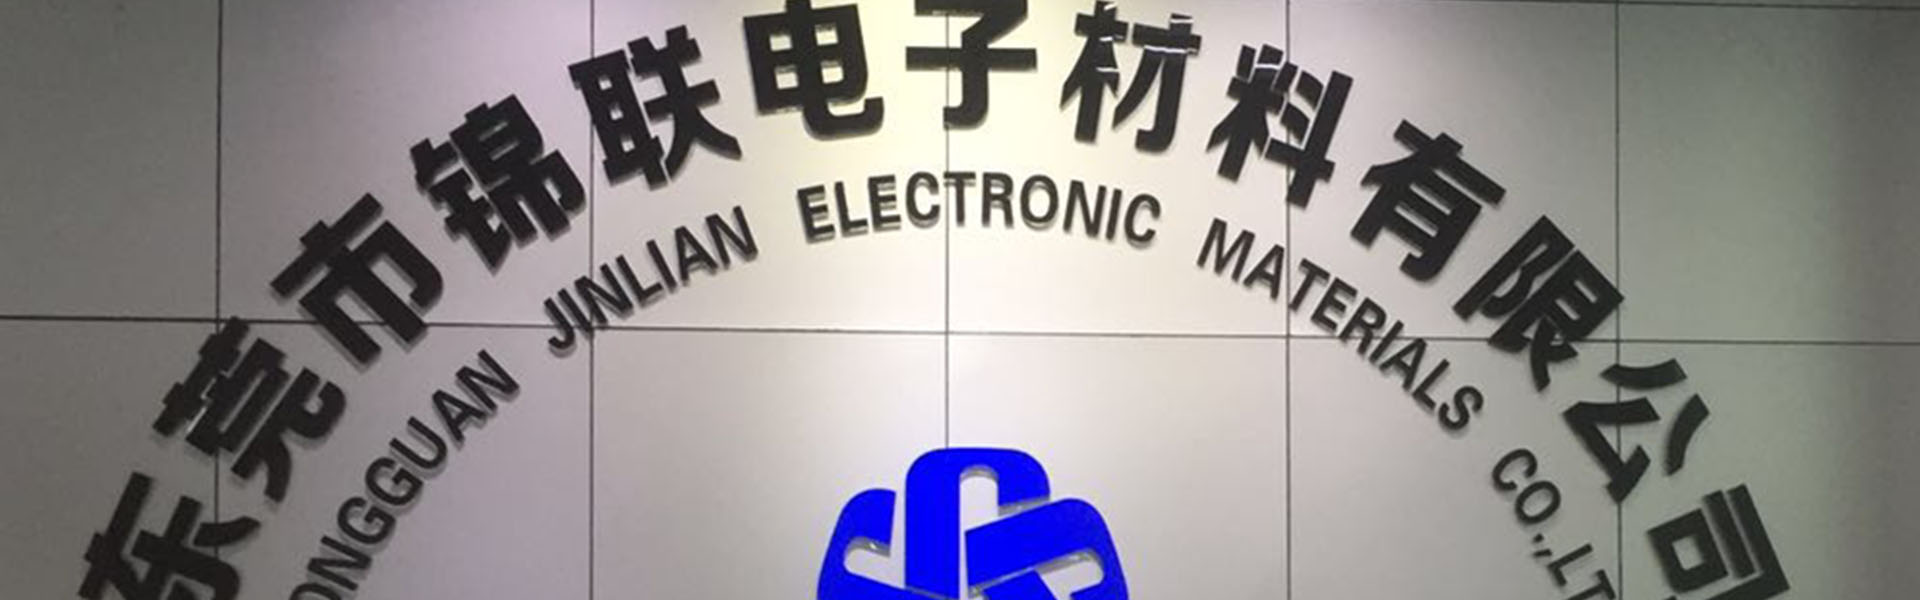 Blasenbox, Tablett, Trägerband,Dongguan Jinlian Electronic Materials Co., Ltd